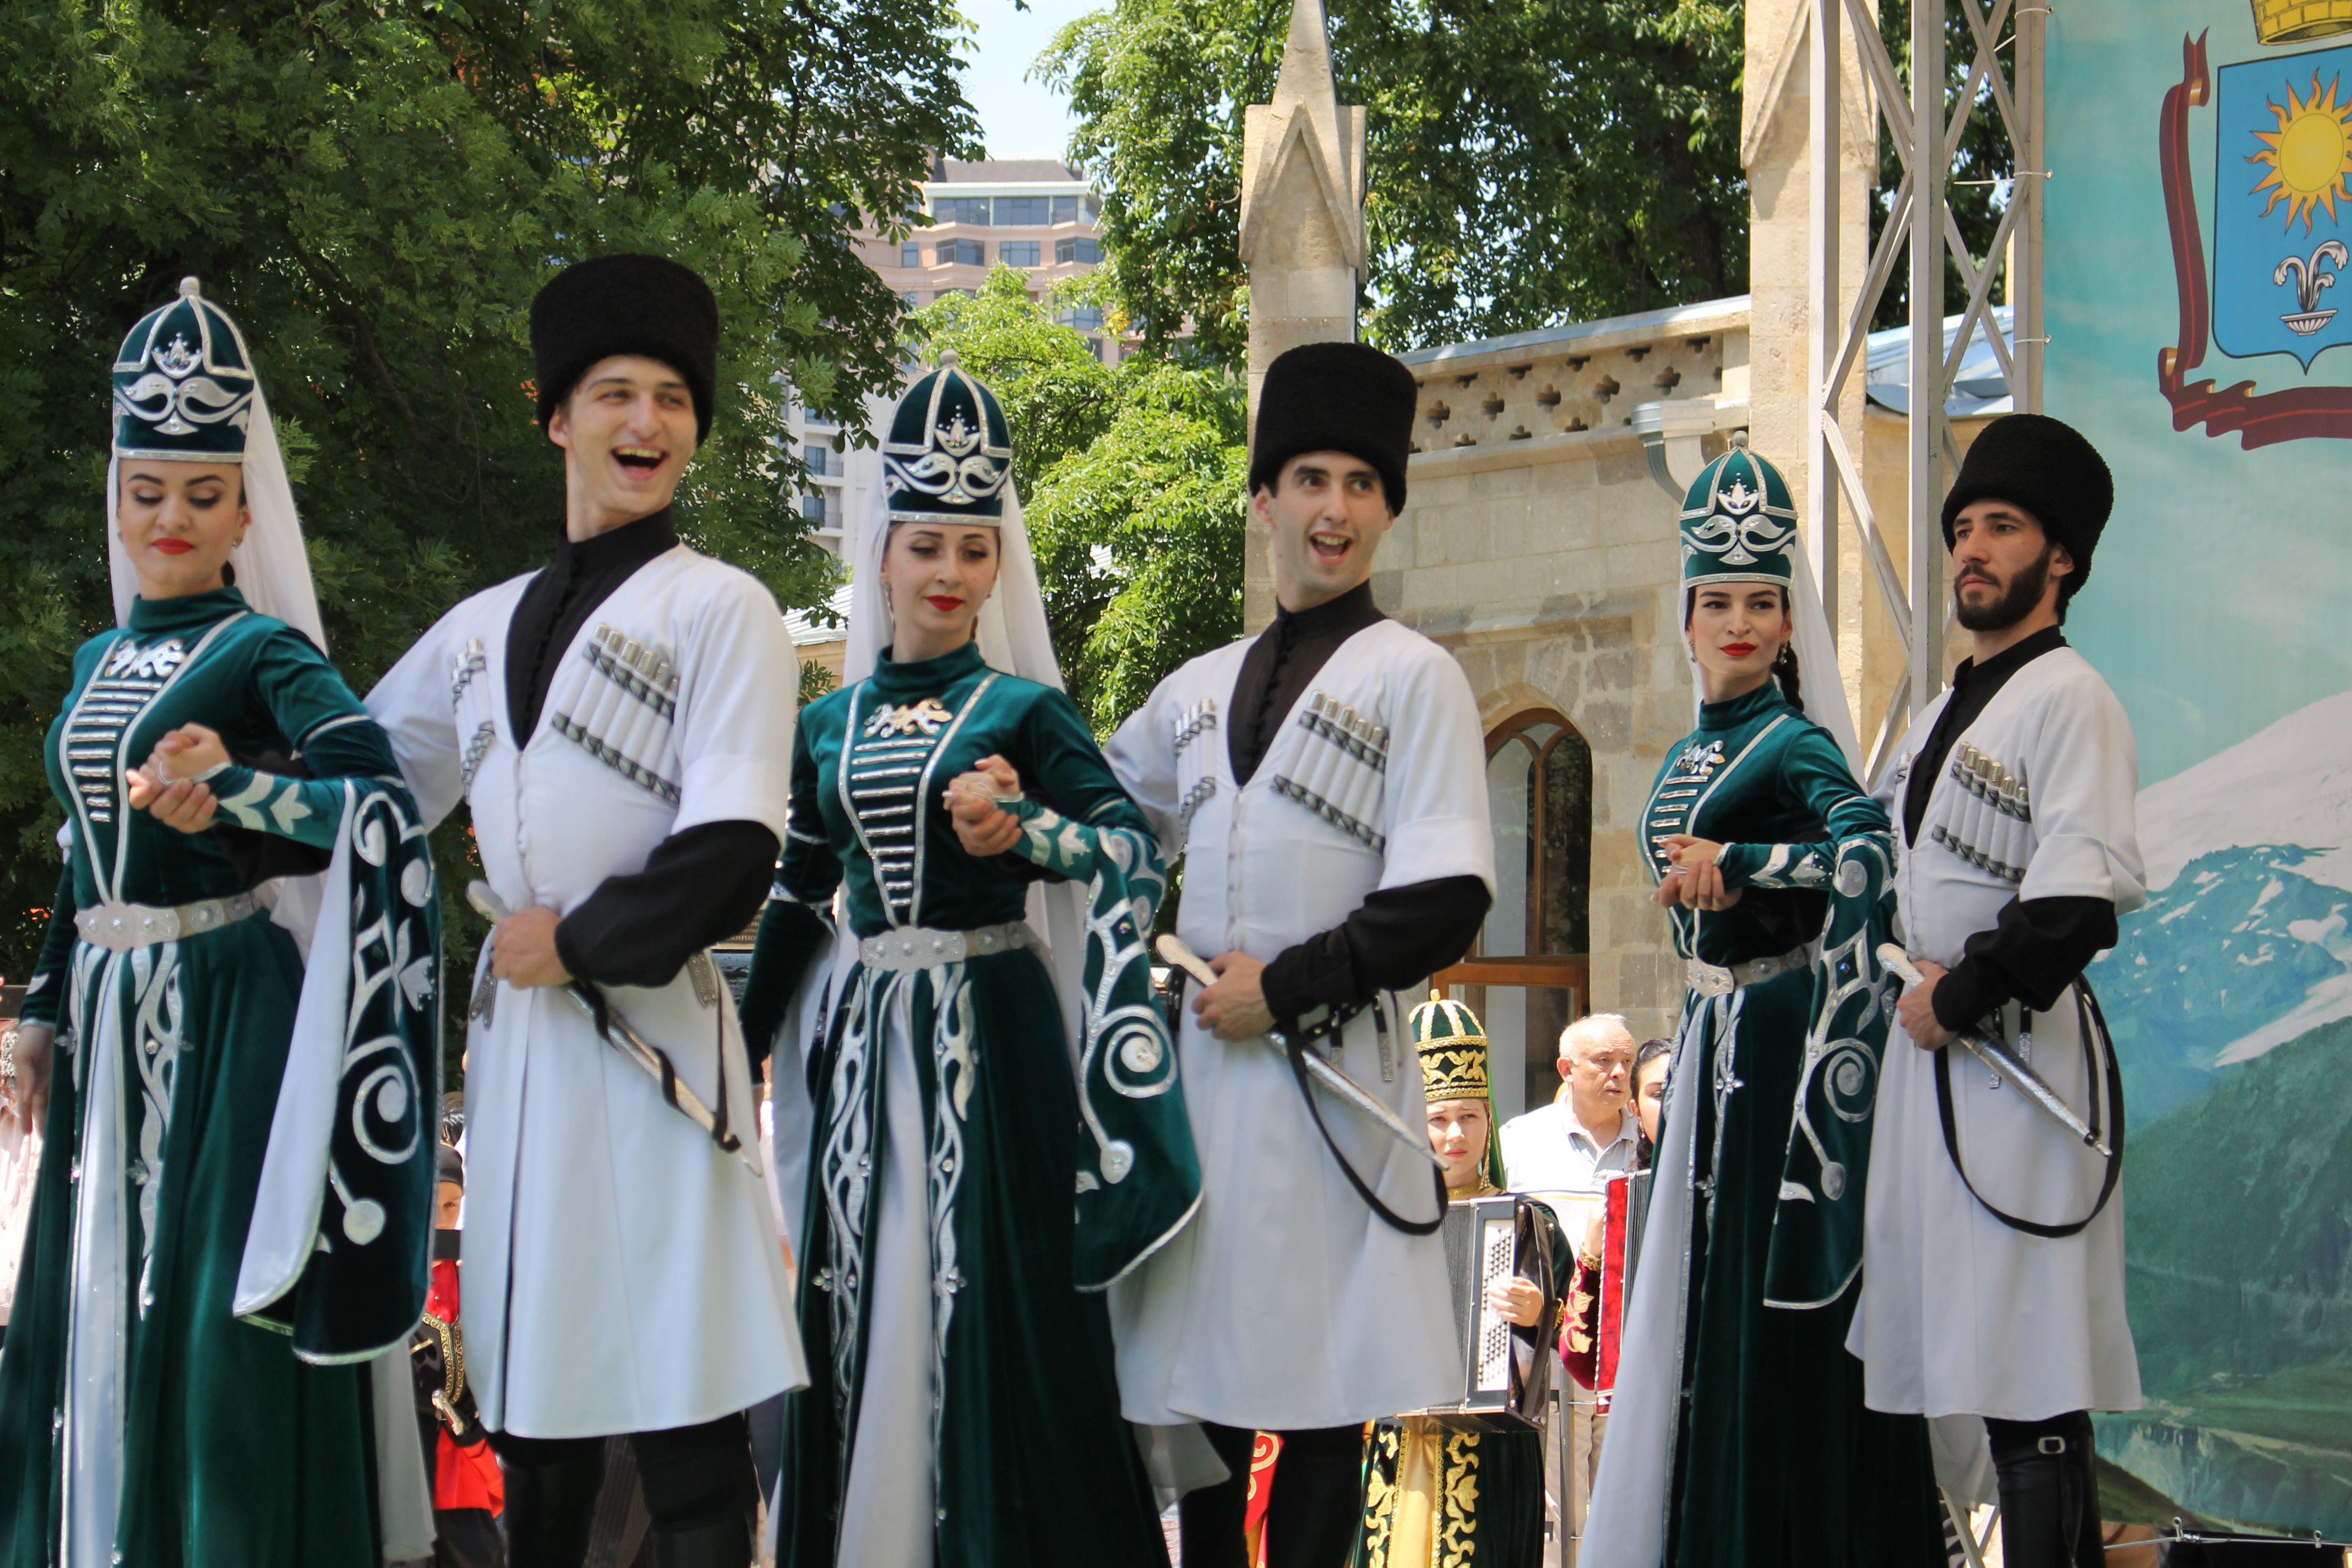 Национальный фестиваль «Гостеприимный Кисловодск» собрал созвездие талантов представителей карачаевского этноса